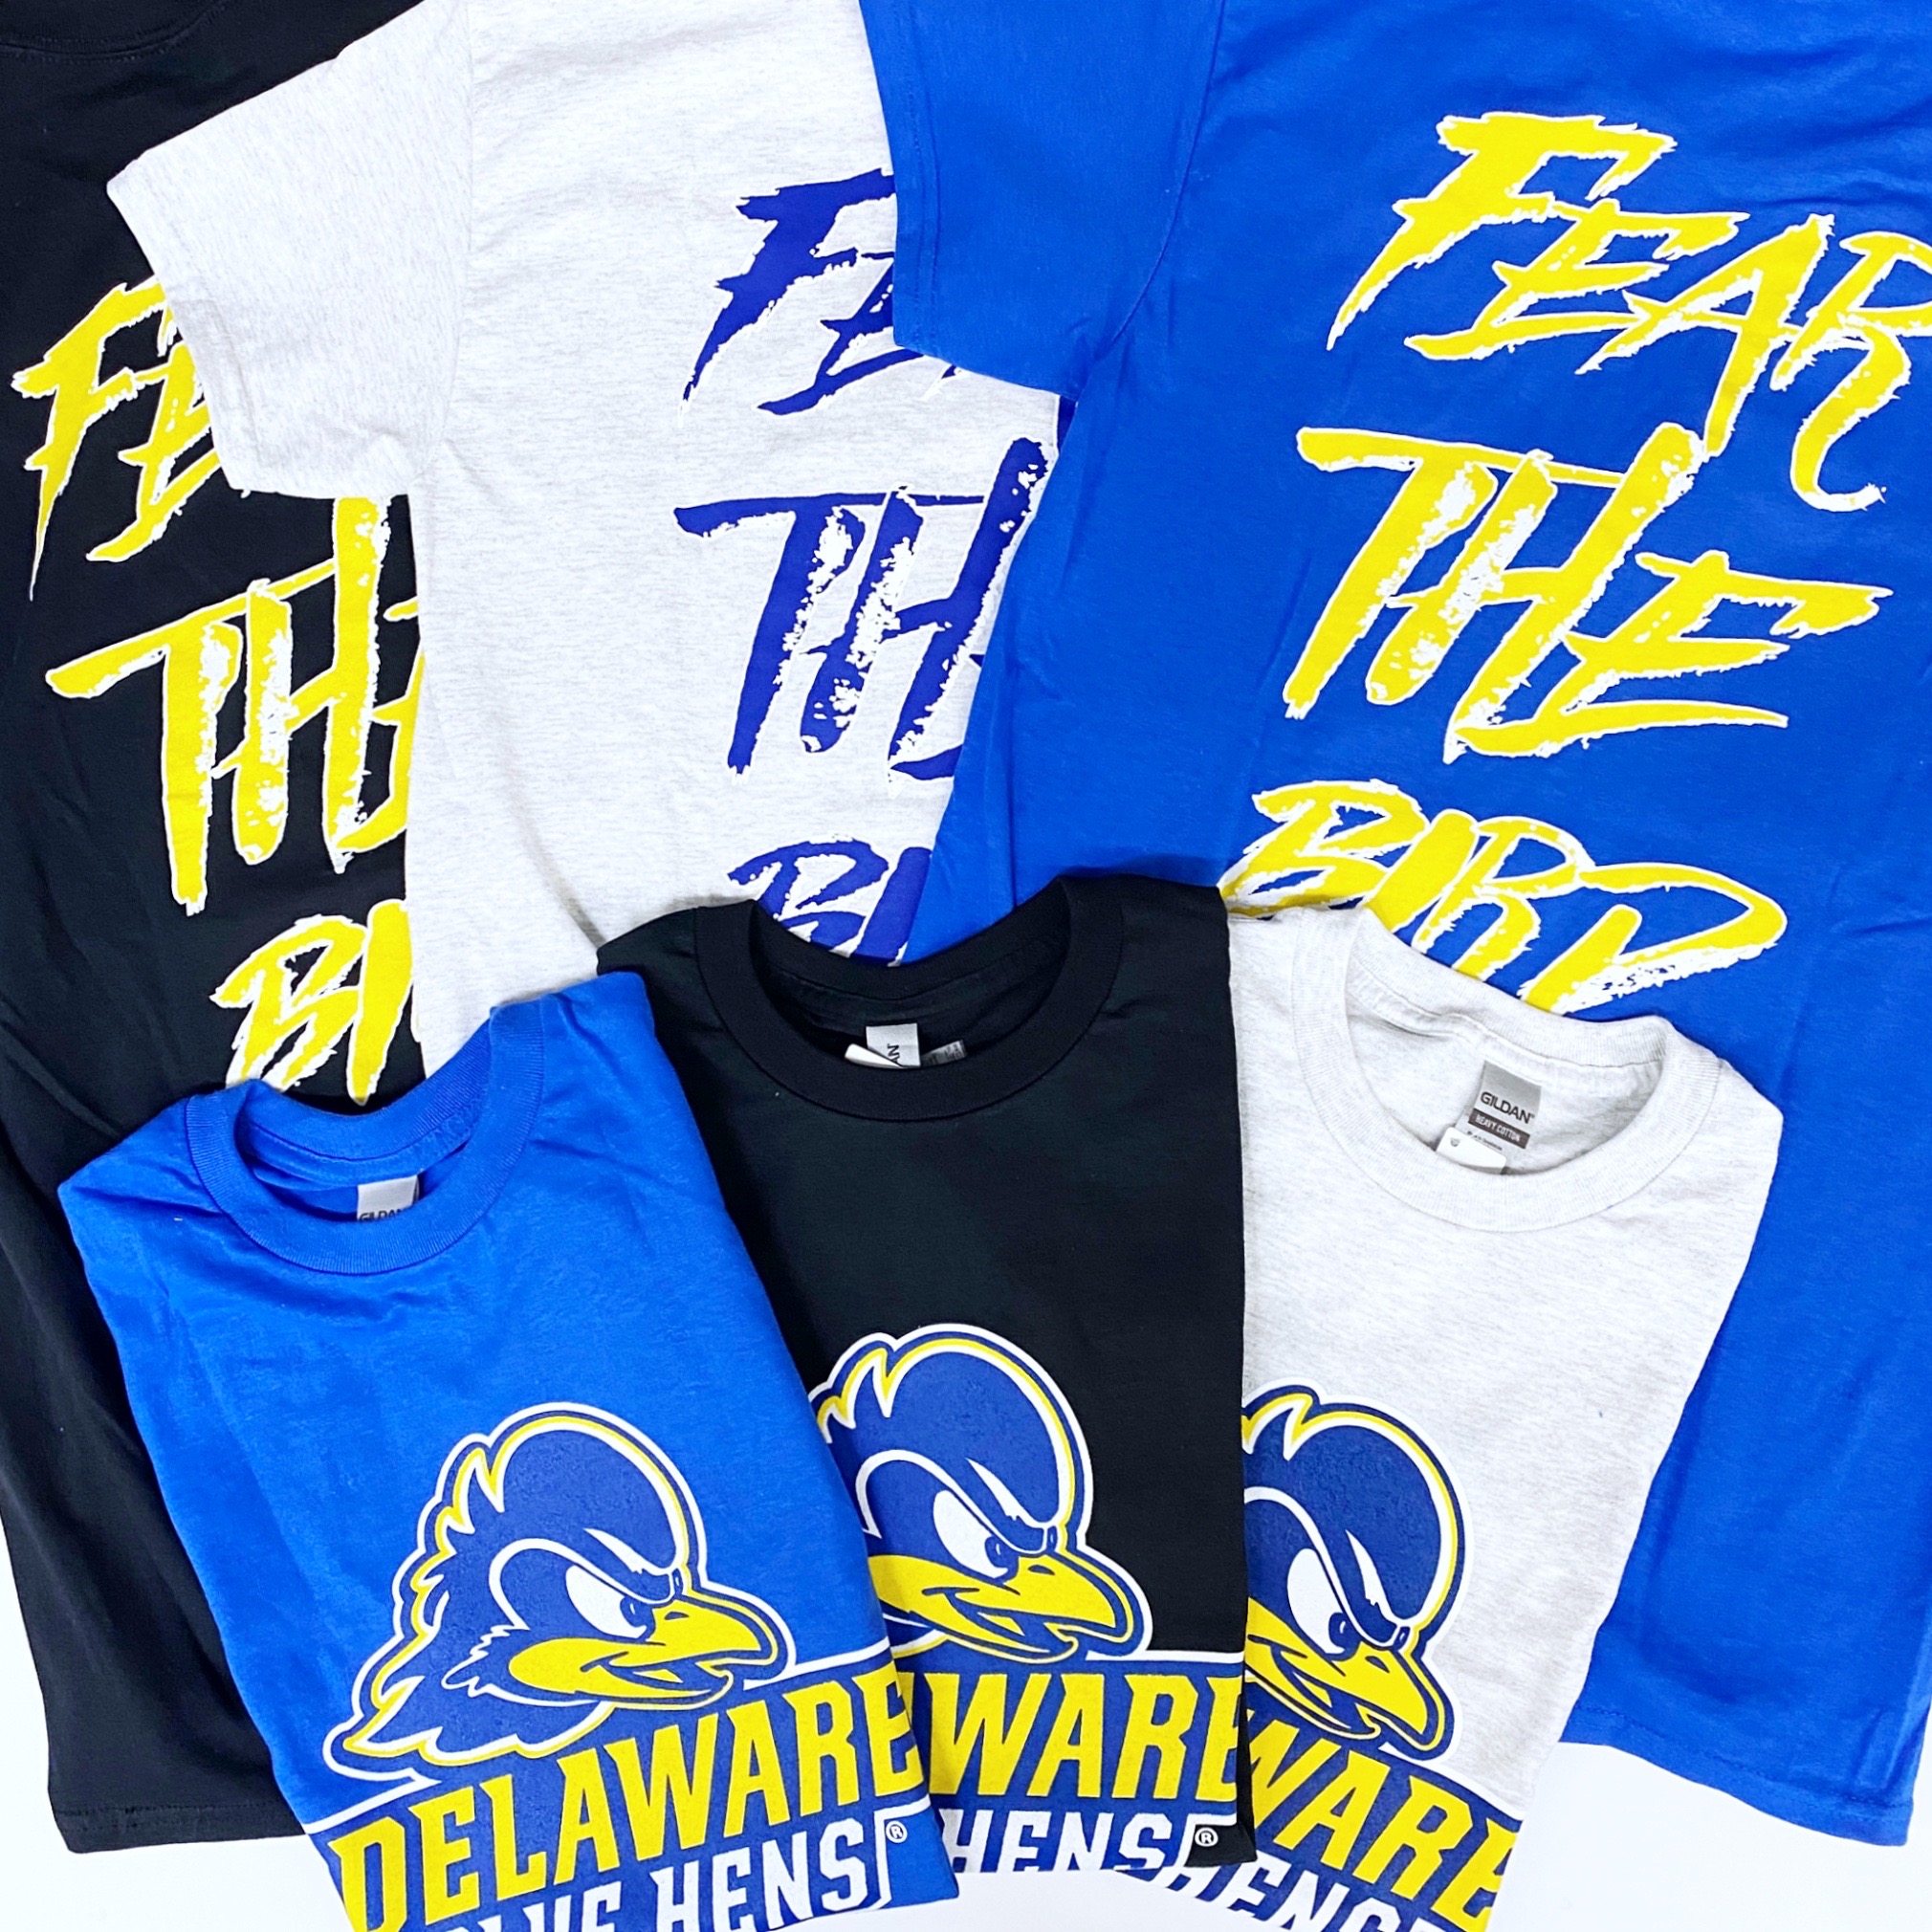 University of Delaware Blue Hens Nike S/S Performance T-shirt